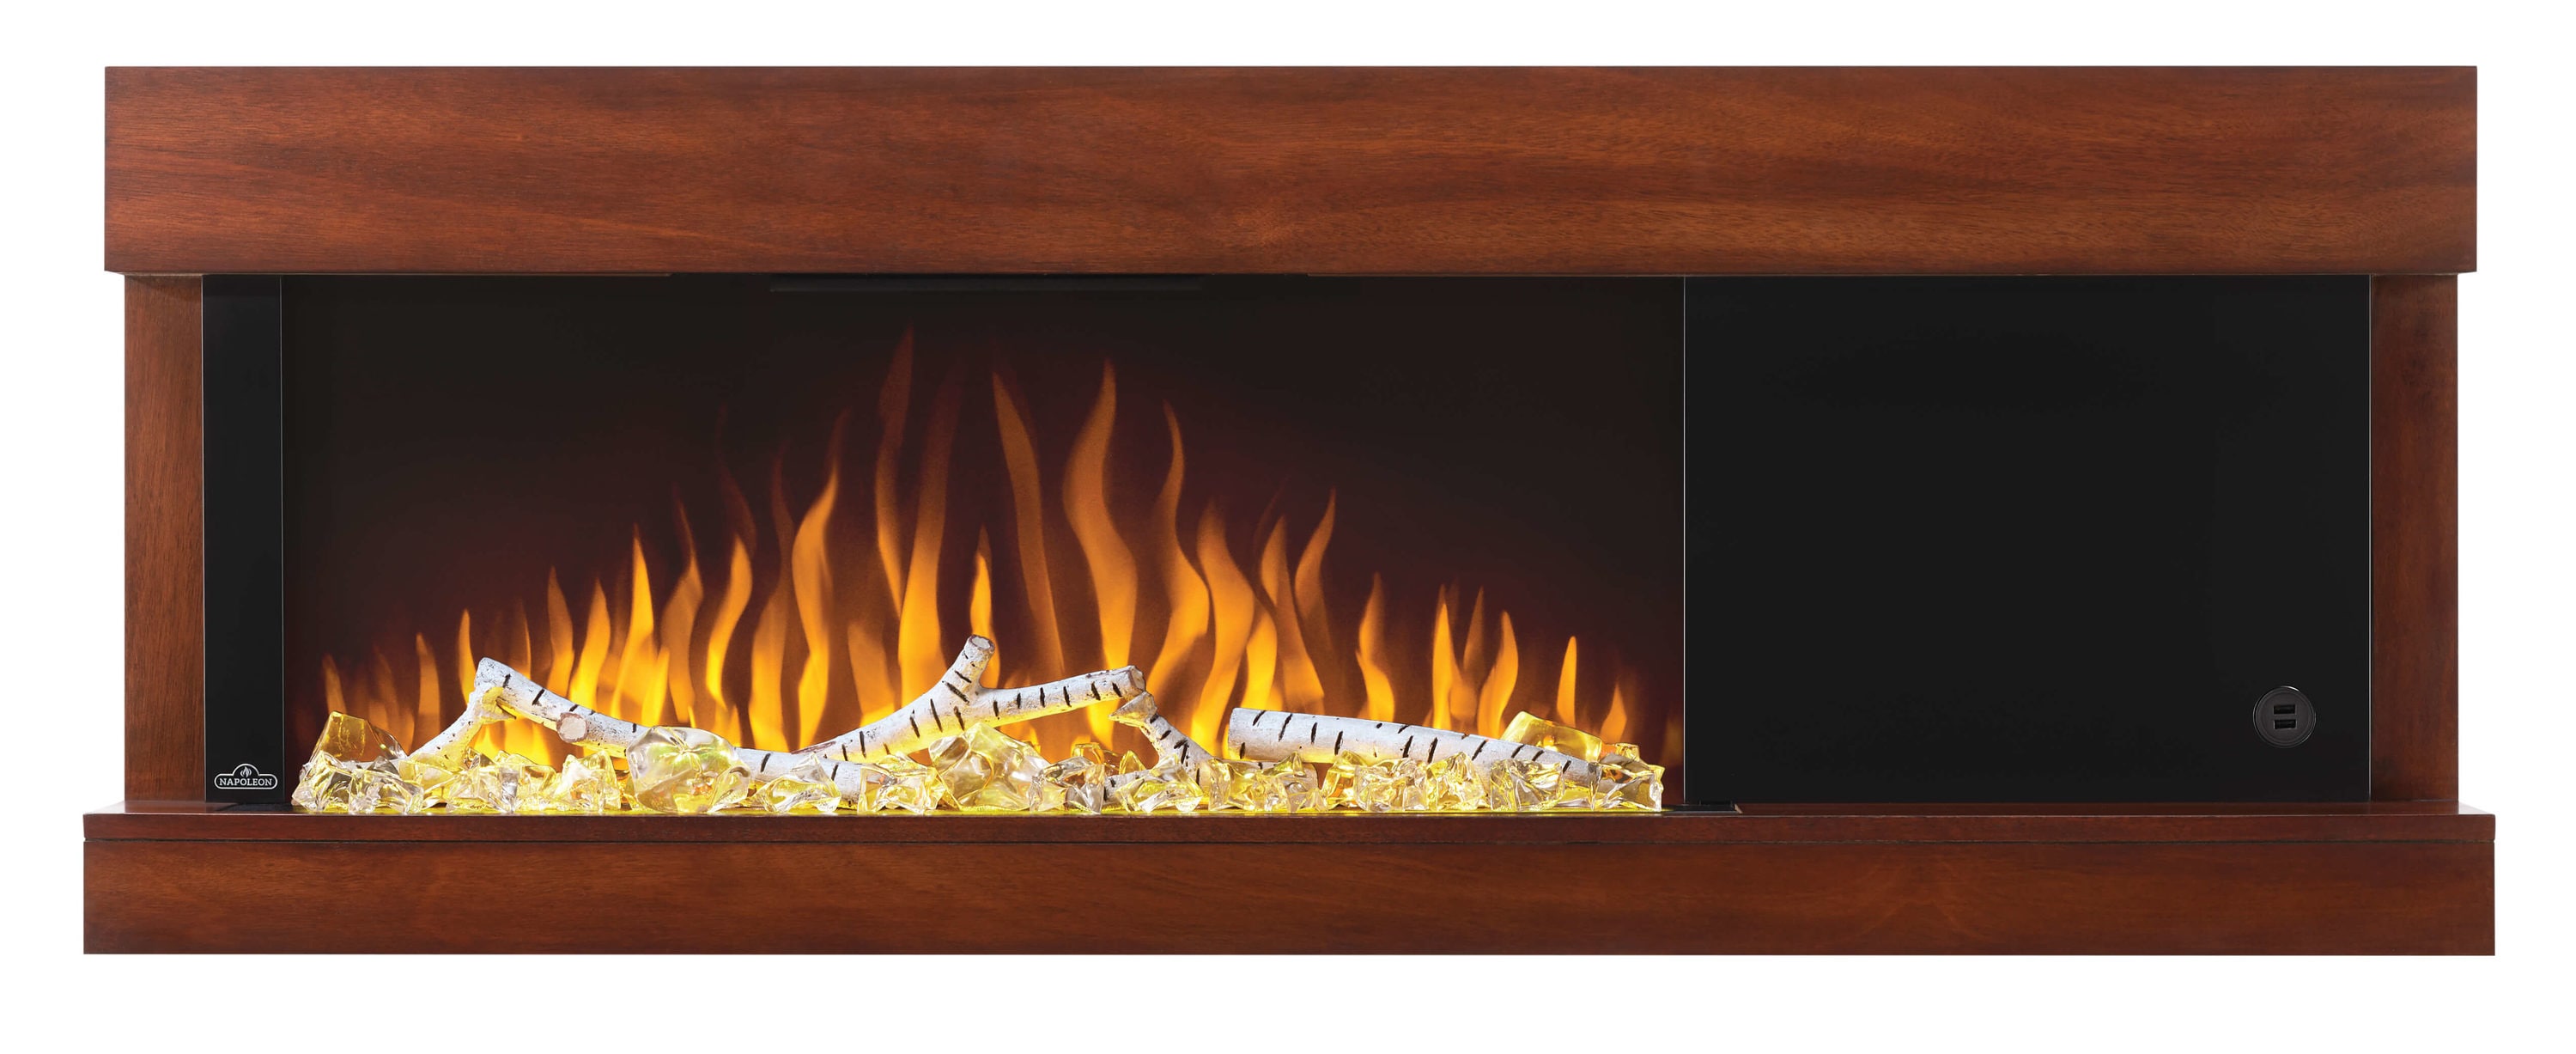 Rutland 10 ft. x 1-1/2 in. Fiberglass Fireplace Insert Insulation